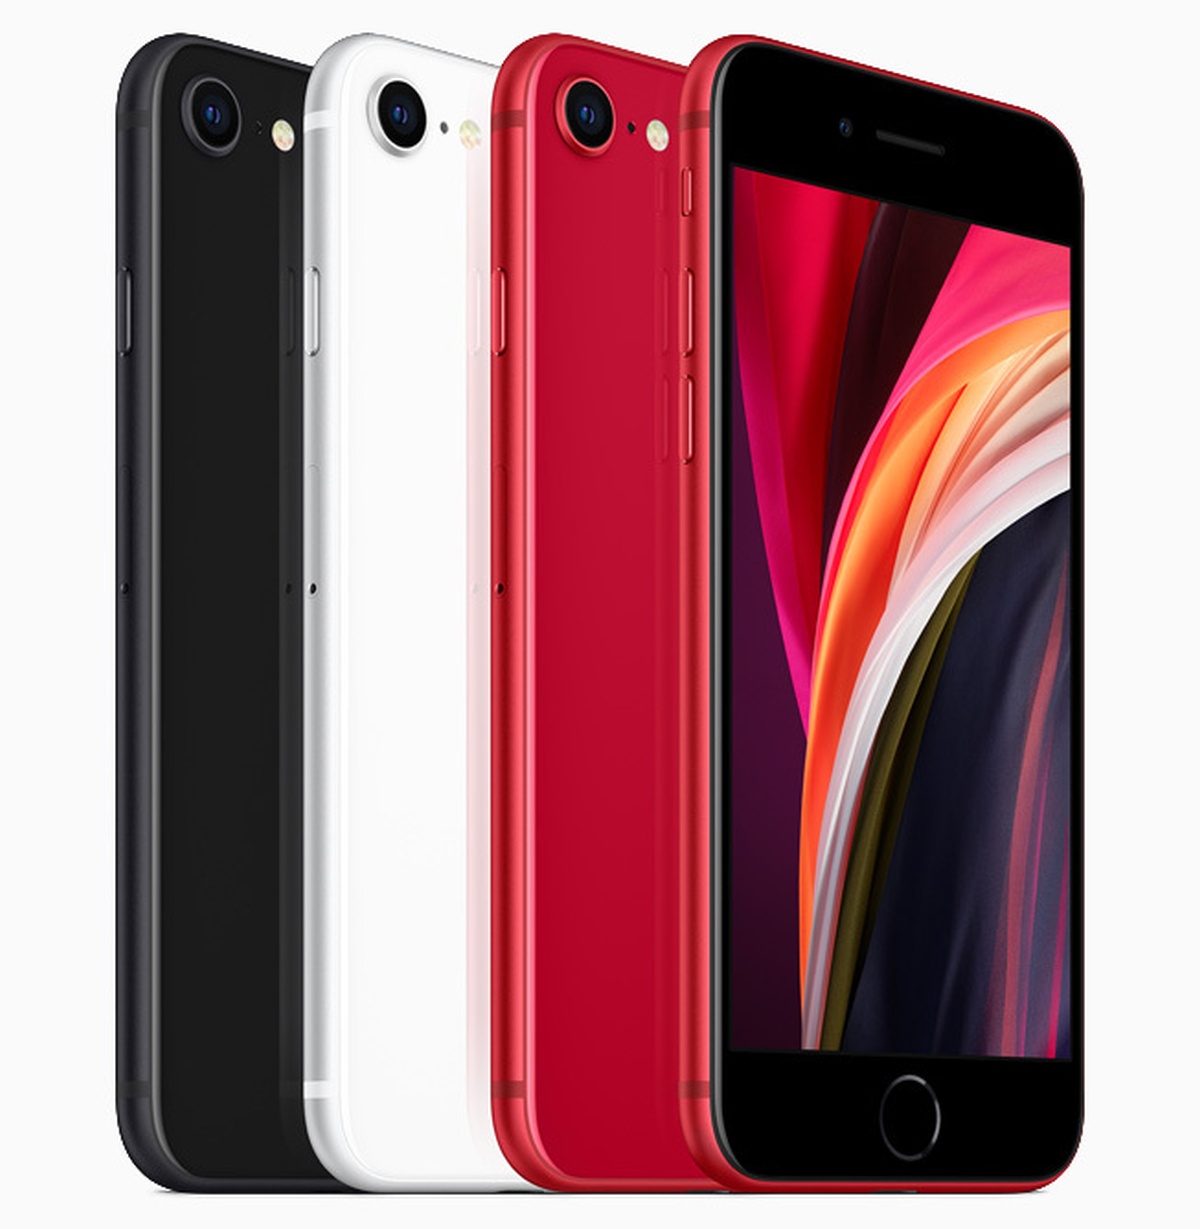 Apple iPhone SE 2020 przedsprzedaż ceny T-Mobile